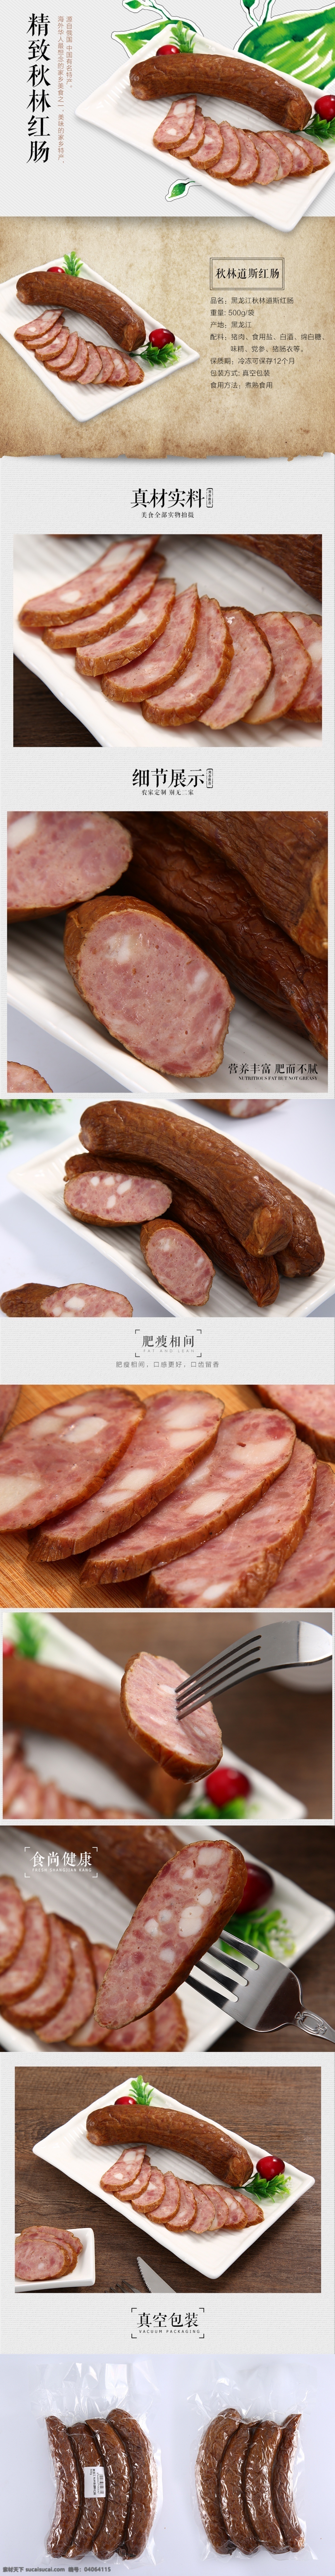 秋林道斯红肠 新疆红肠 肉食农产品